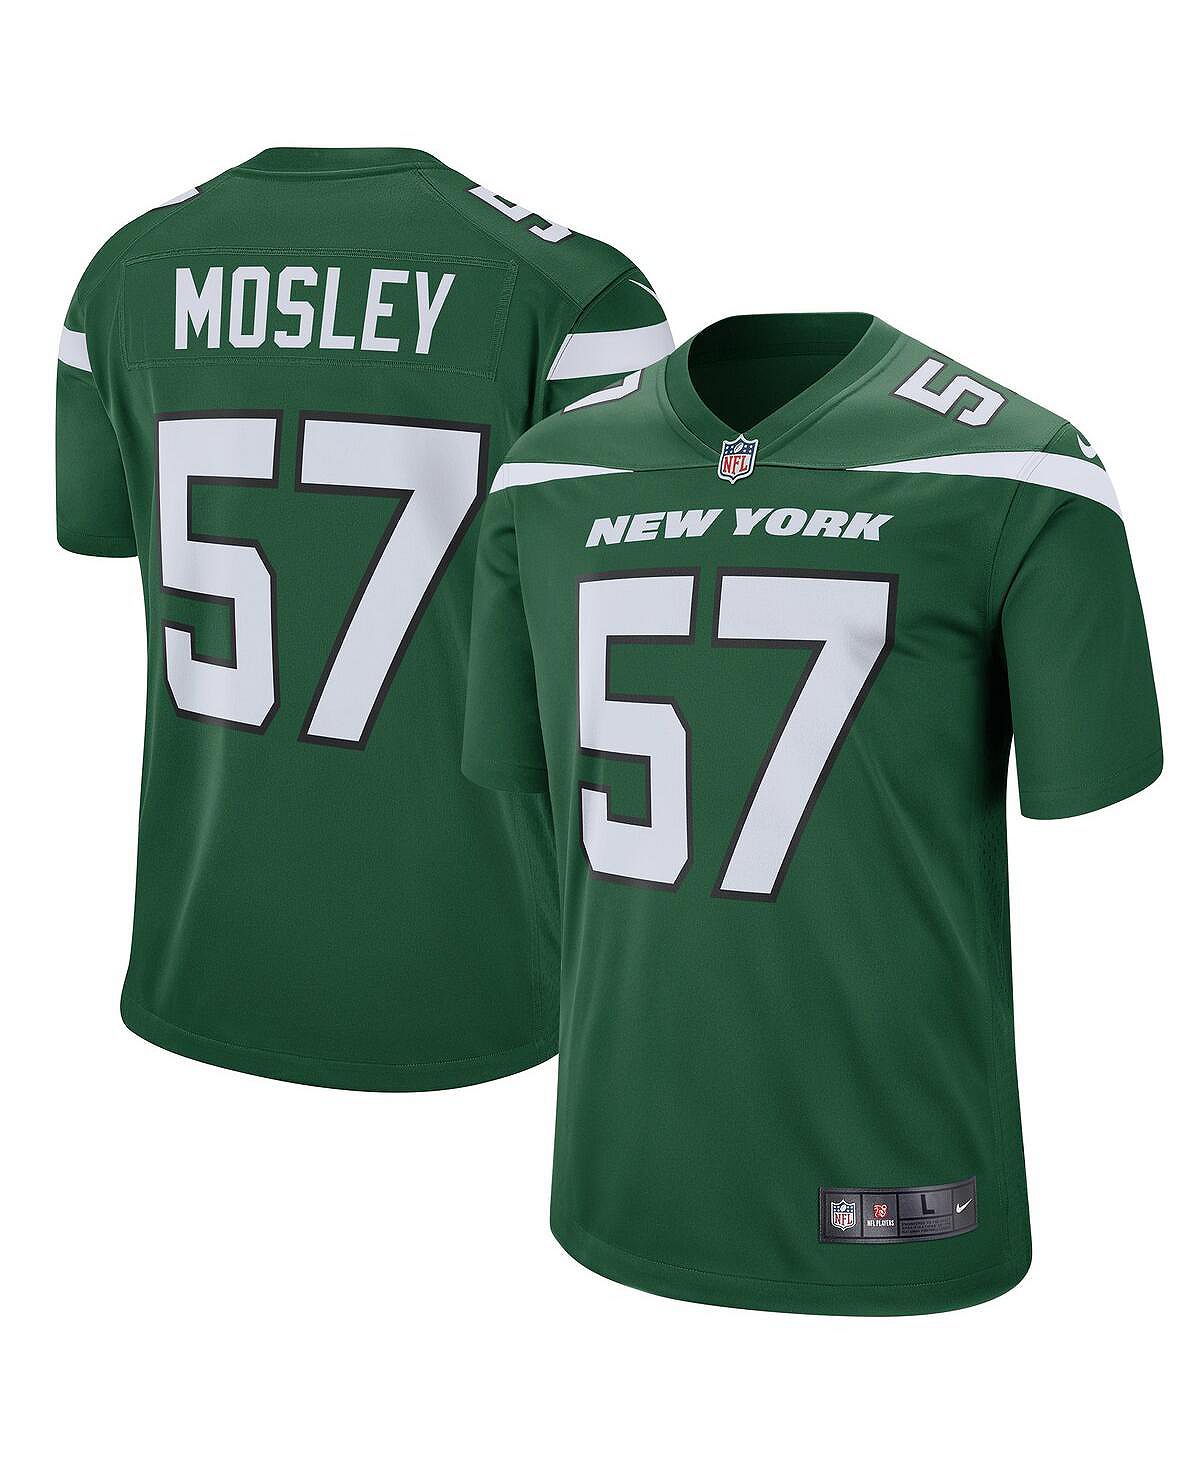 цена Мужская футболка cj mosley gotham green new york jets game jersey Nike, зеленый